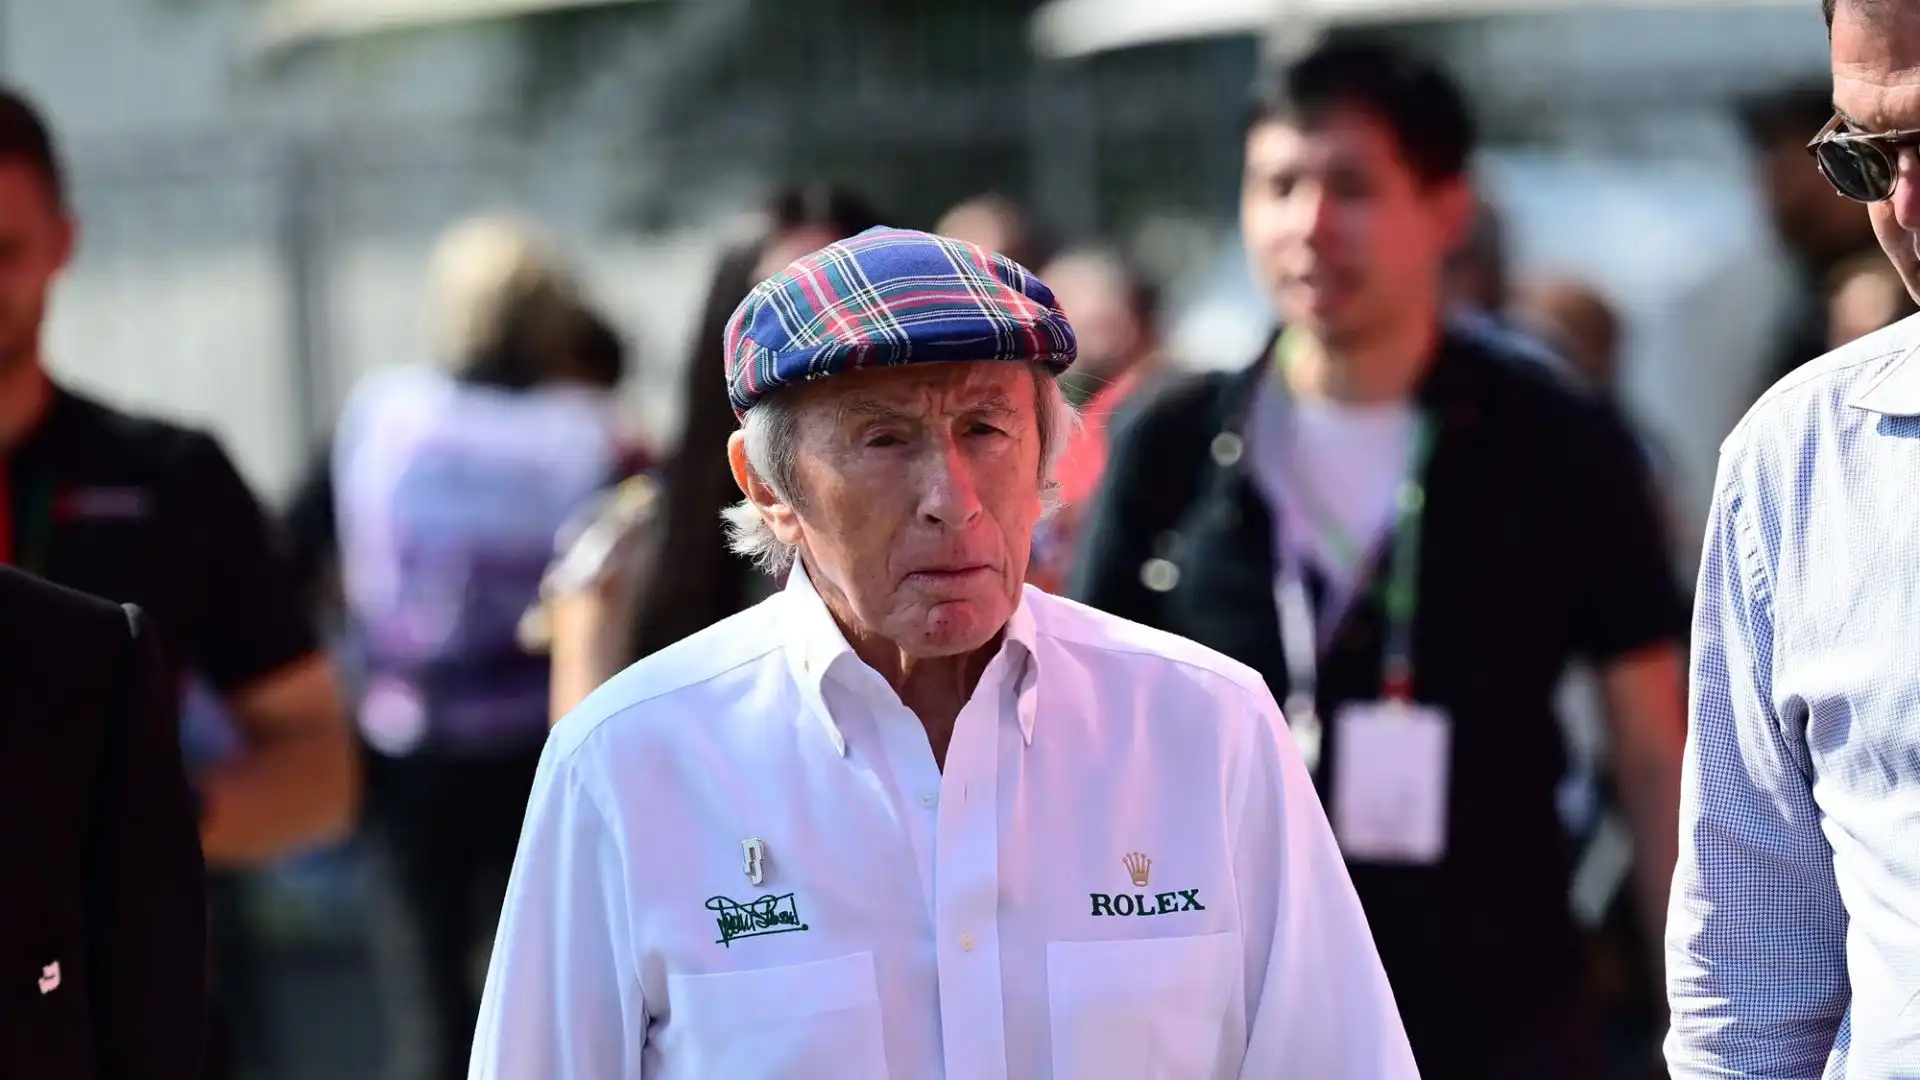 "Il signor Fangio per me non sarà mai superato", ha detto riferendosi al leggendario pilota argentino